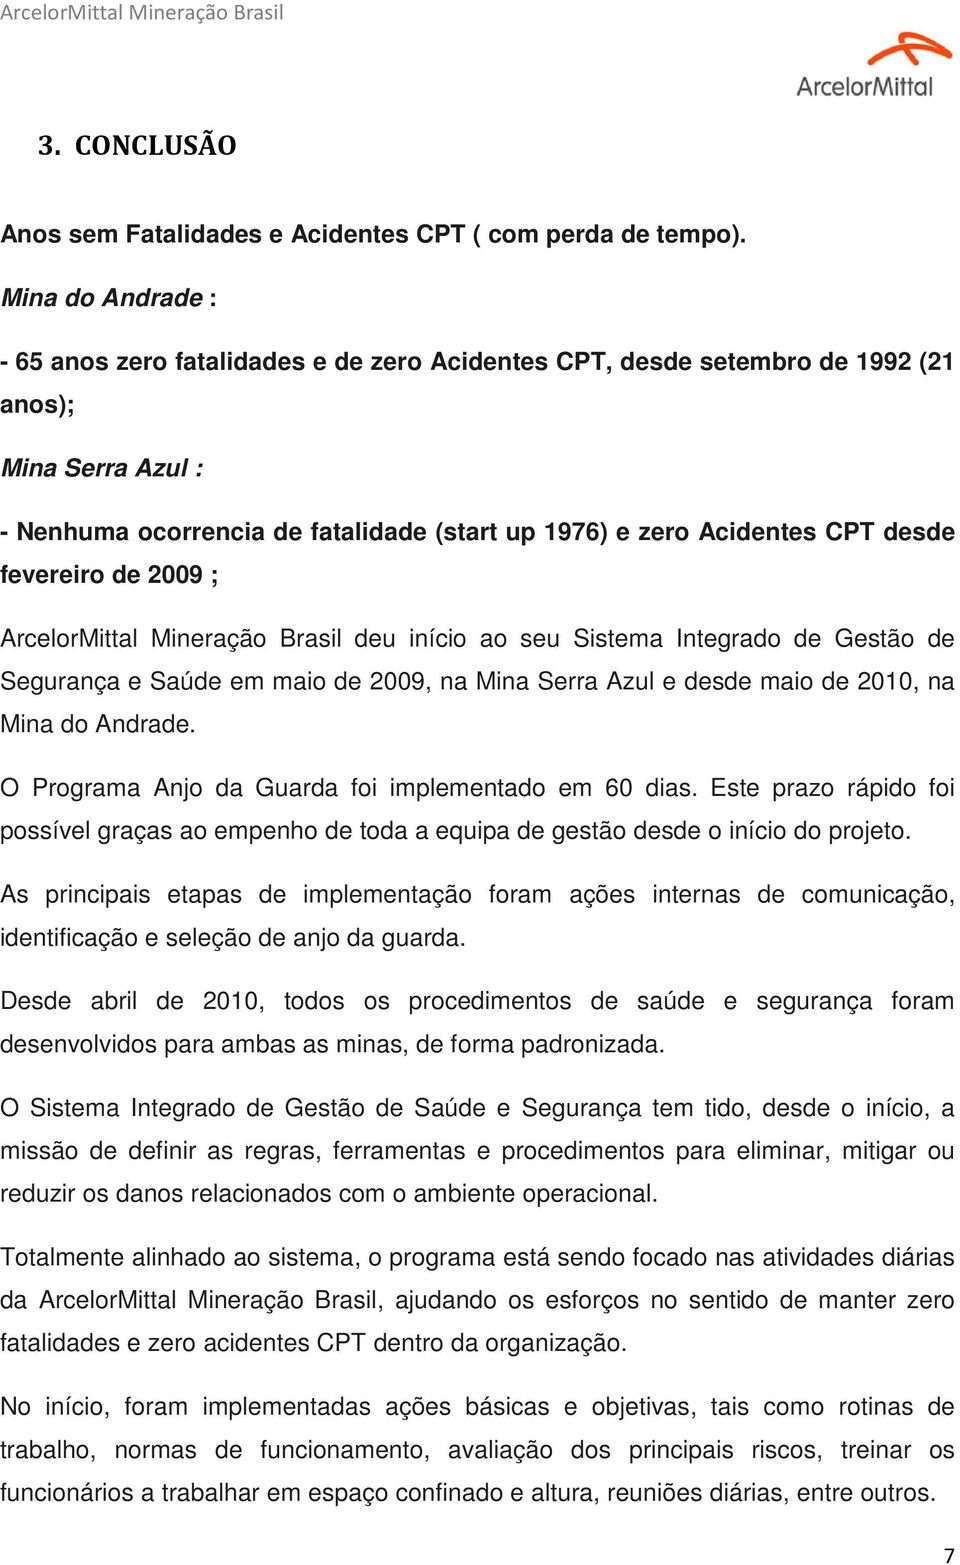 fevereiro de 2009 ; ArcelorMittal Mineração Brasil deu início ao seu Sistema Integrado de Gestão de Segurança e Saúde em maio de 2009, na Mina Serra Azul e desde maio de 2010, na Mina do Andrade.